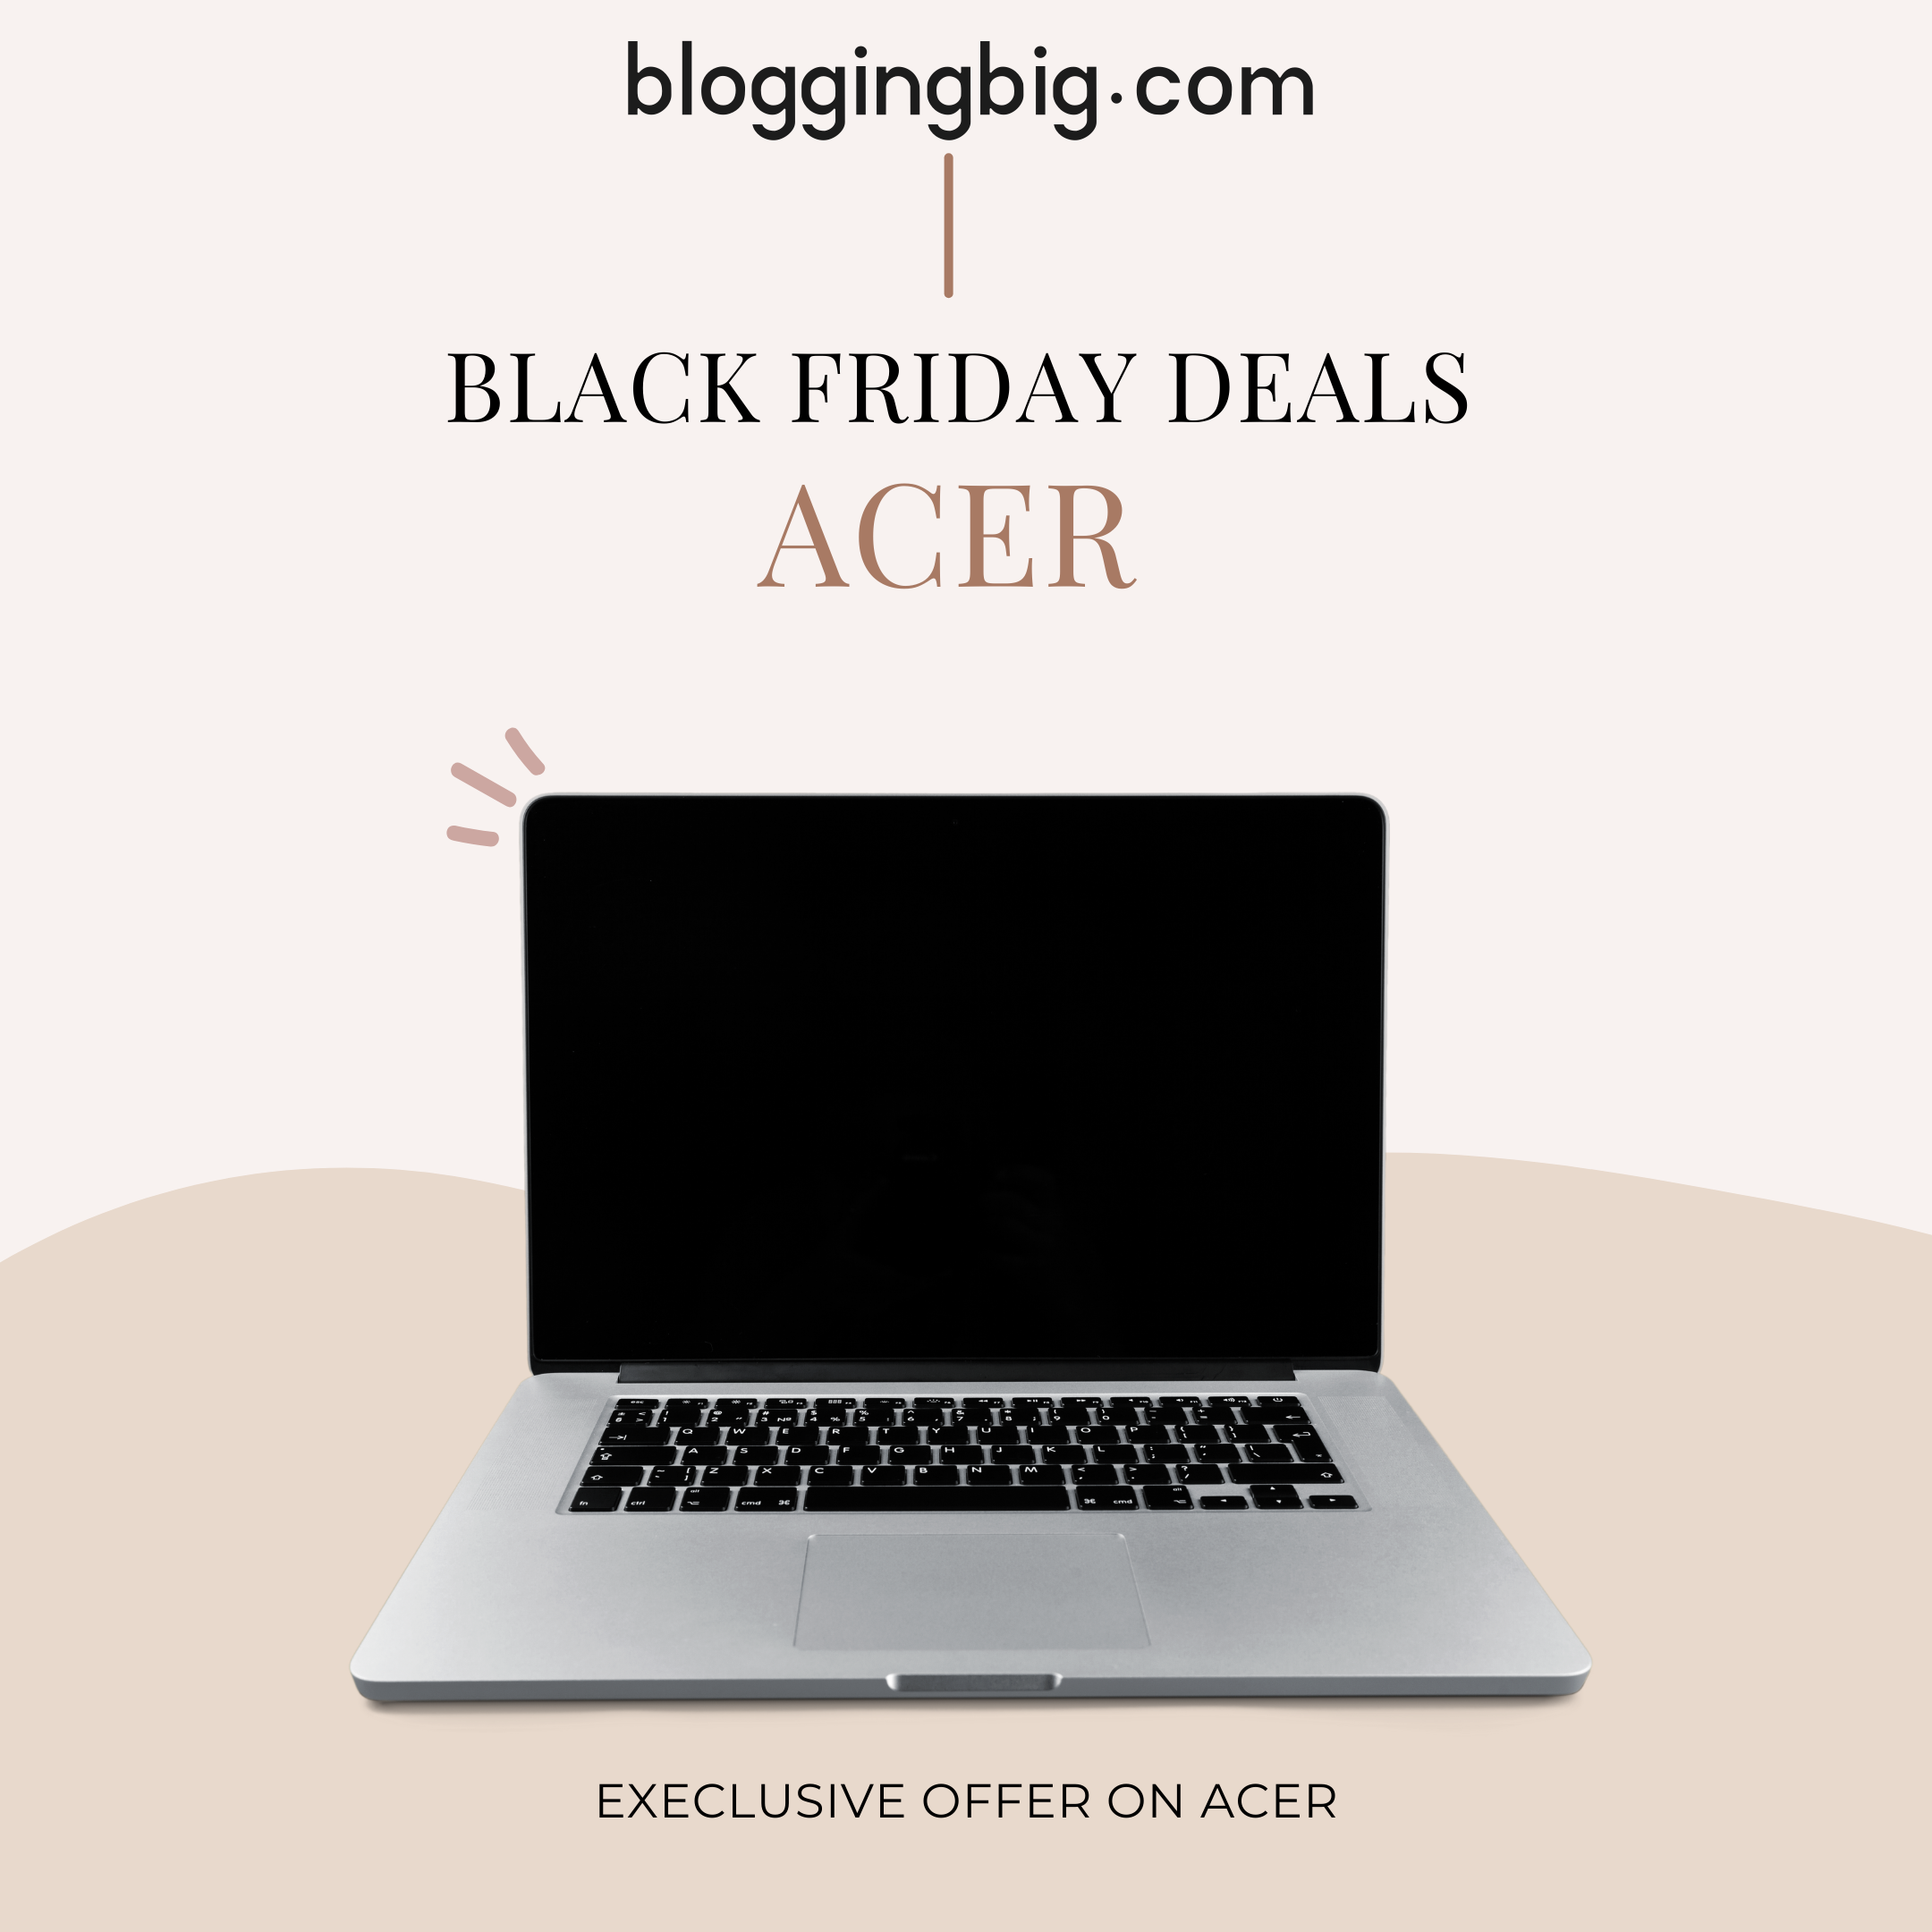 Acer Black Friday Deals on Laptops. image